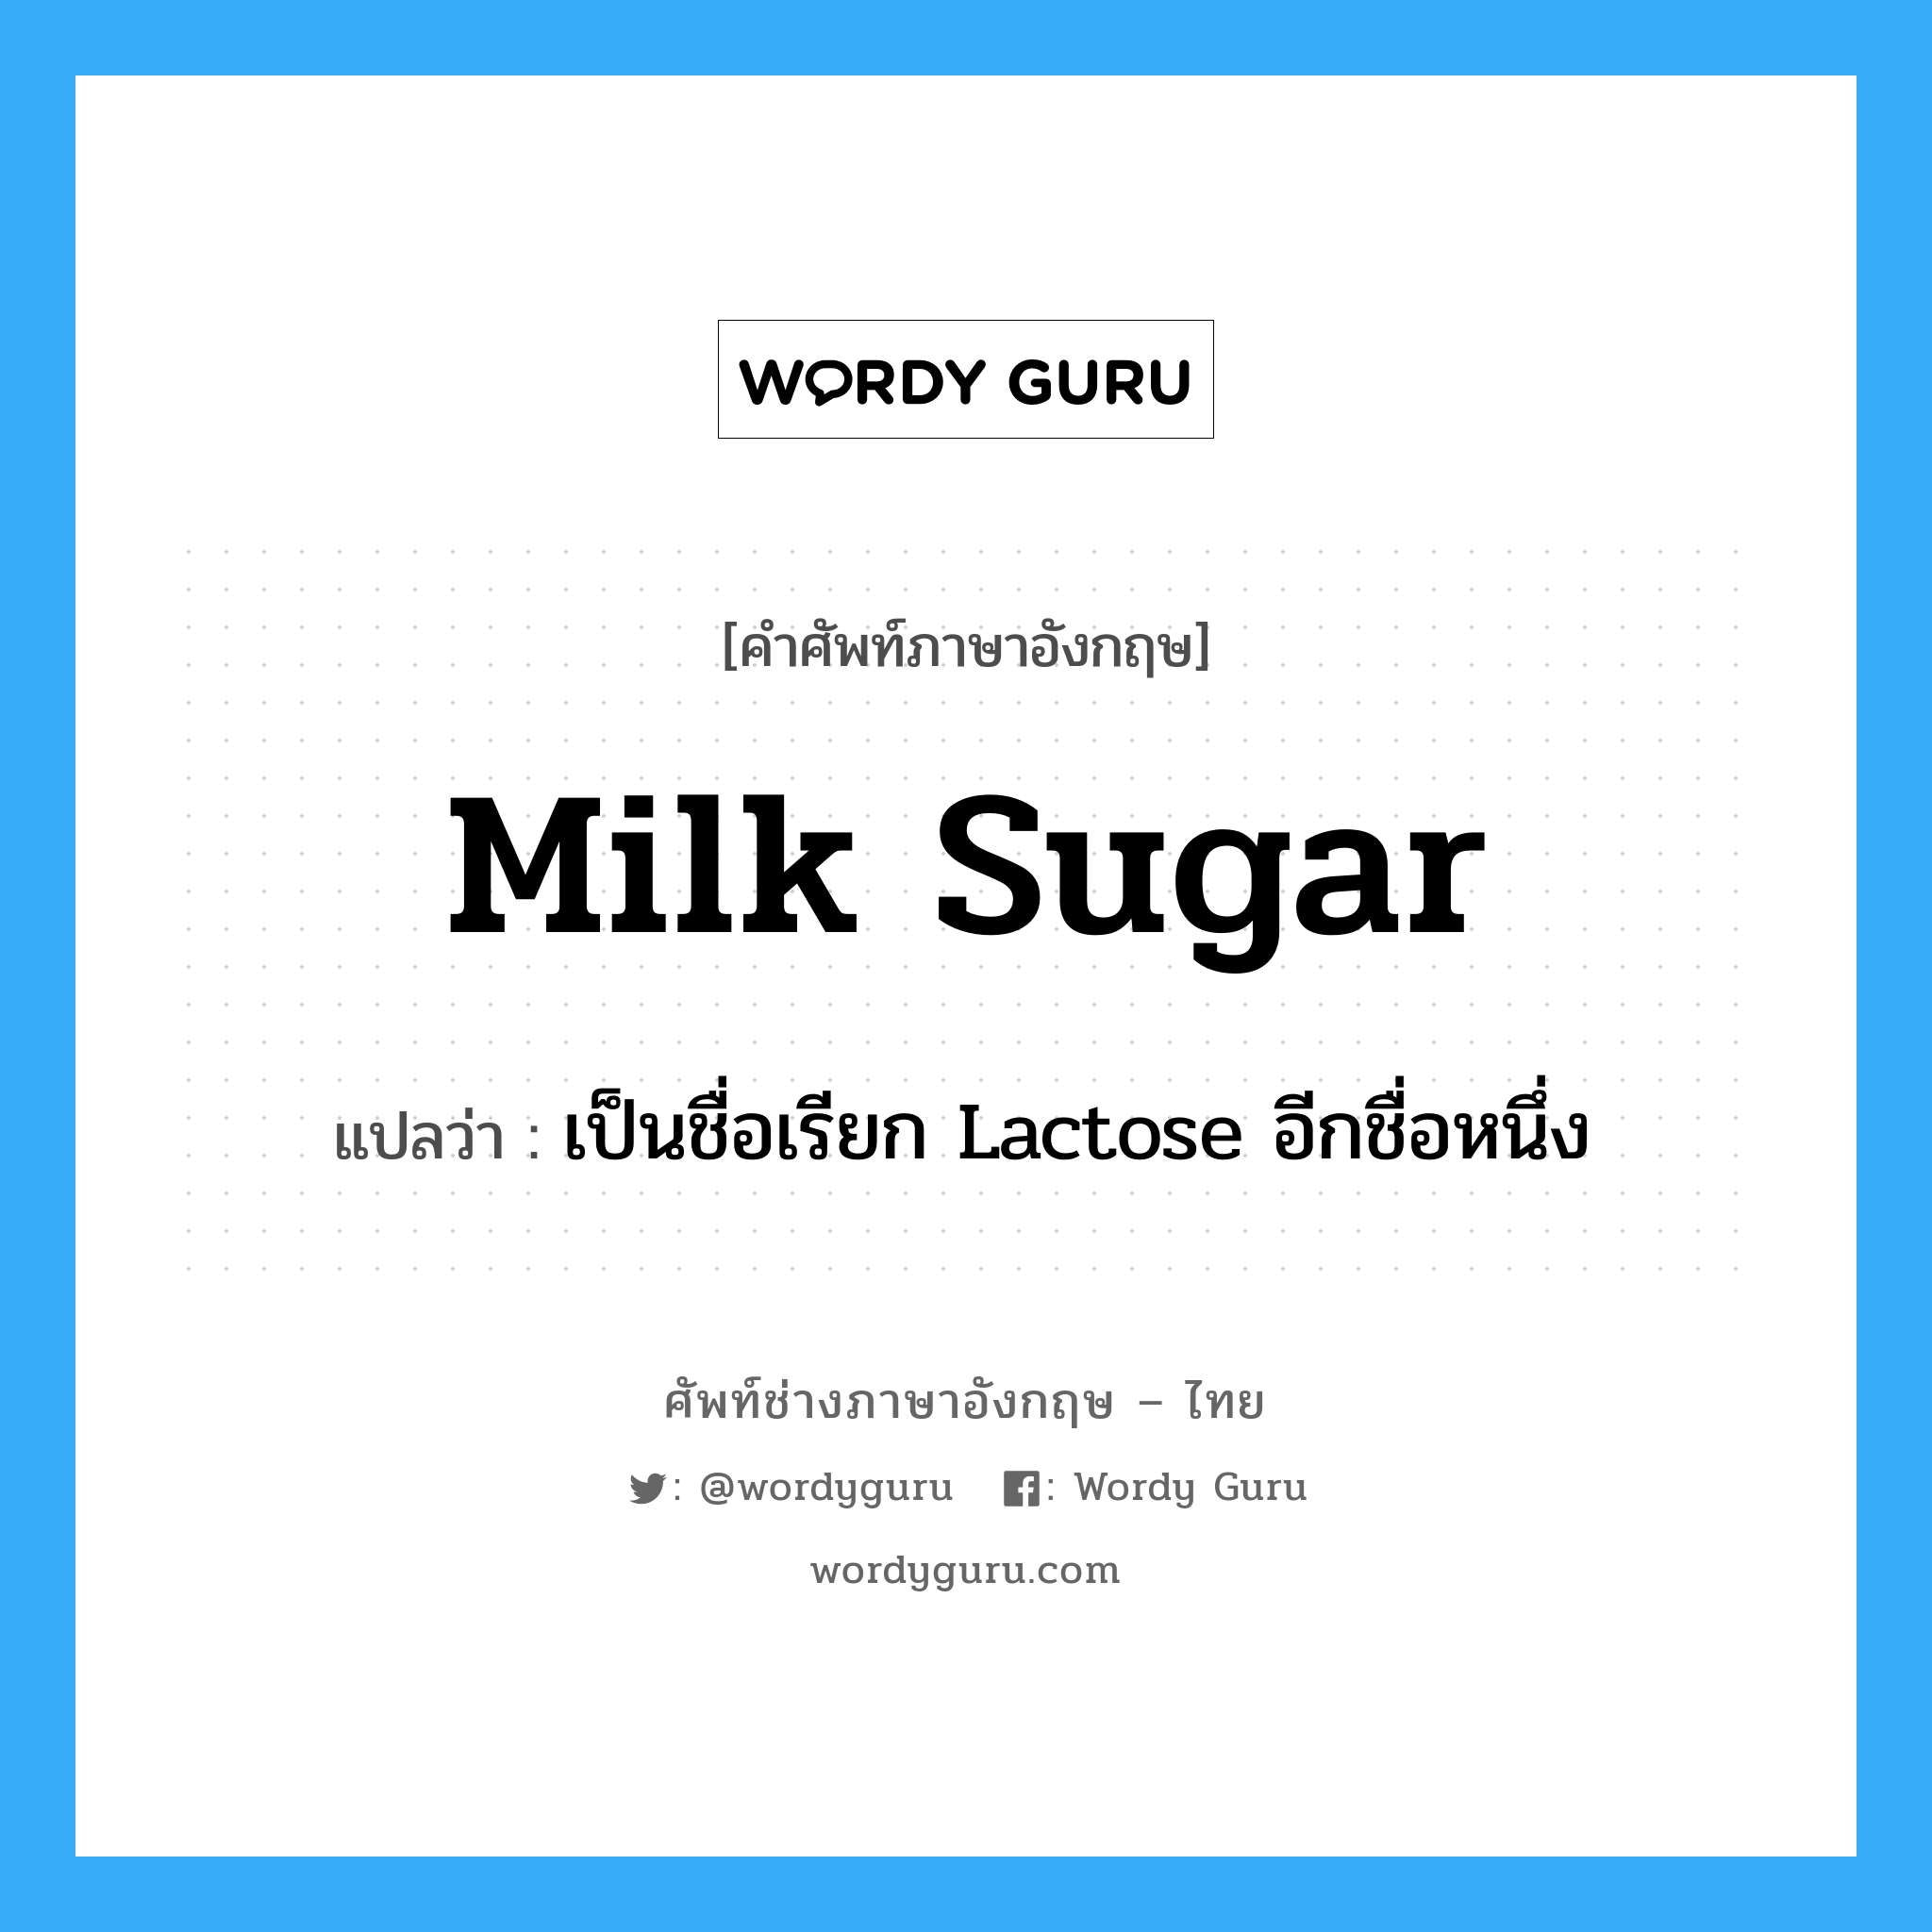 เป็นชื่อเรียก Lactose อีกชื่อหนึ่ง ภาษาอังกฤษ?, คำศัพท์ช่างภาษาอังกฤษ - ไทย เป็นชื่อเรียก Lactose อีกชื่อหนึ่ง คำศัพท์ภาษาอังกฤษ เป็นชื่อเรียก Lactose อีกชื่อหนึ่ง แปลว่า milk sugar